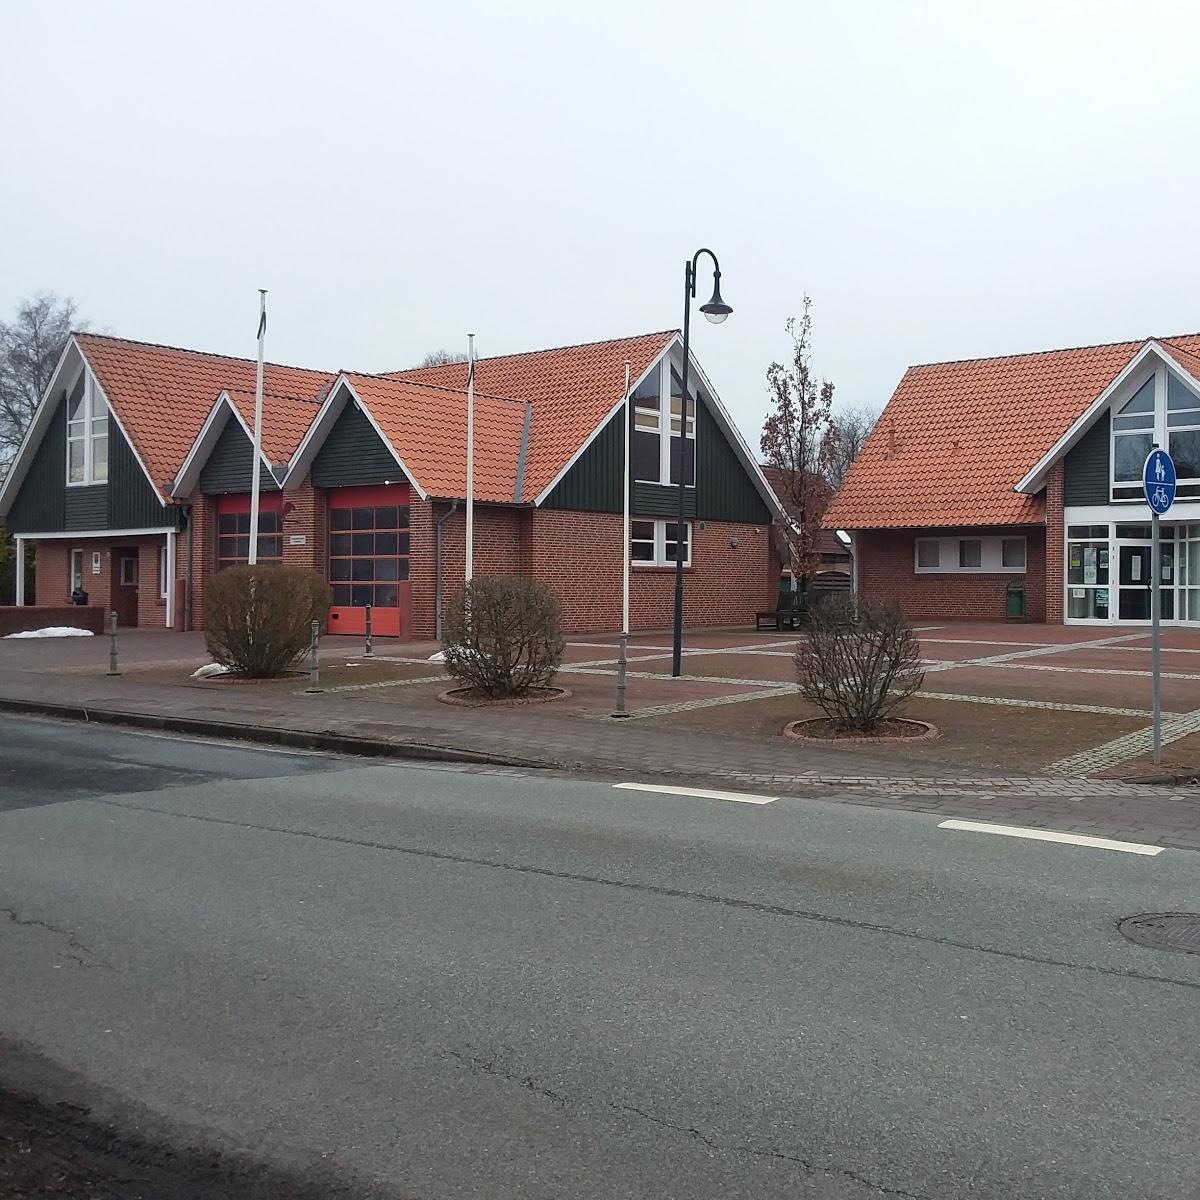 Restaurant "Dorfgemeinschaftshaus" in Nordleda